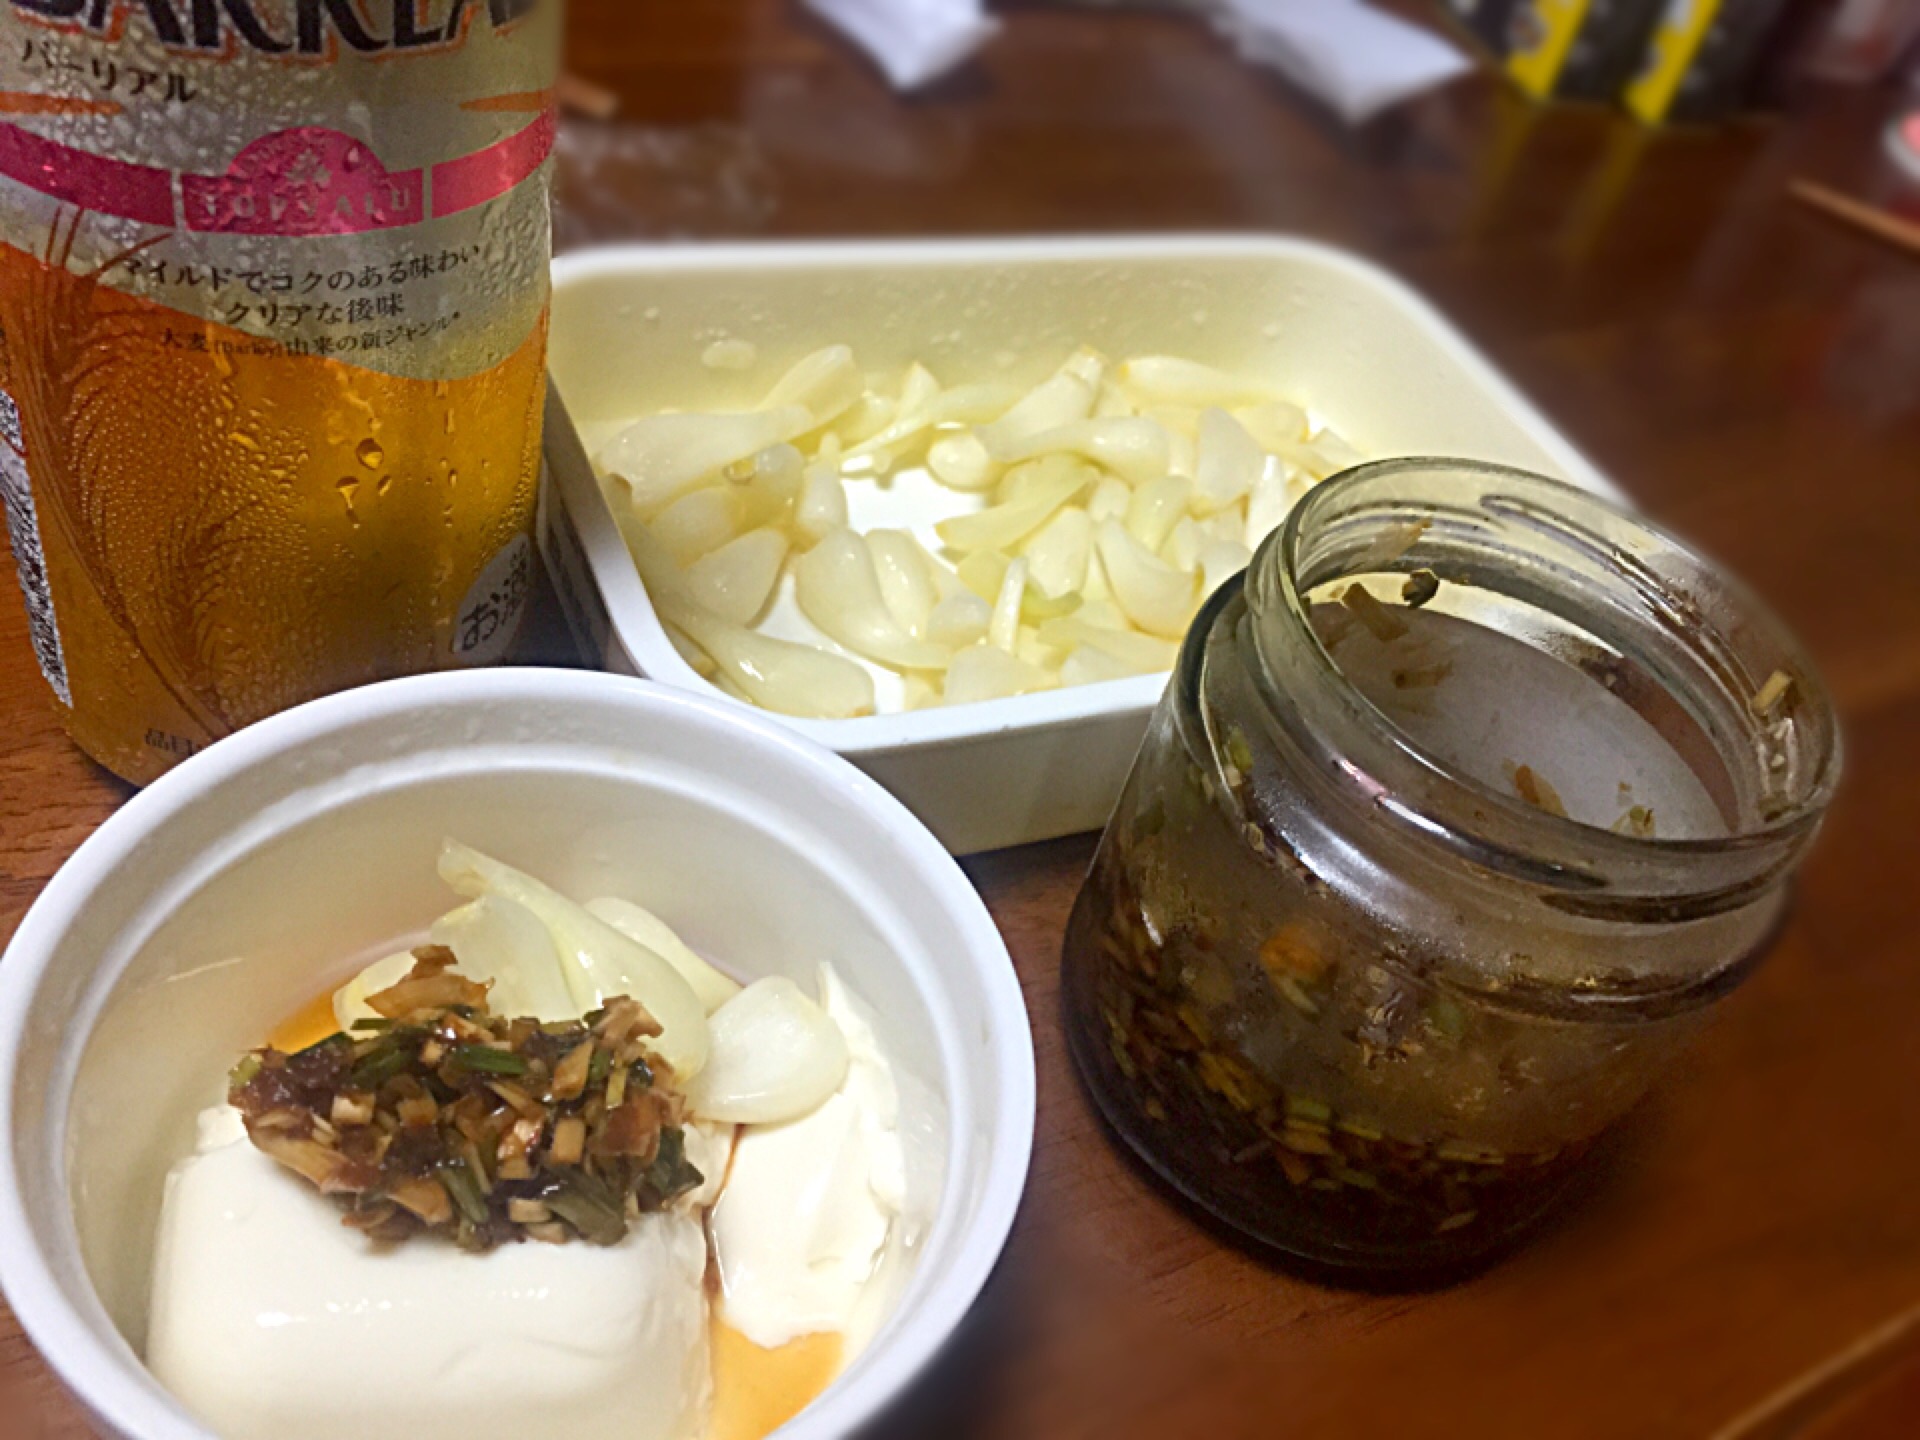 島らっきょうの塩漬けと島らっきょう茎の醤油漬け Shimoda Tohru Snapdish スナップディッシュ Id 4c94ka